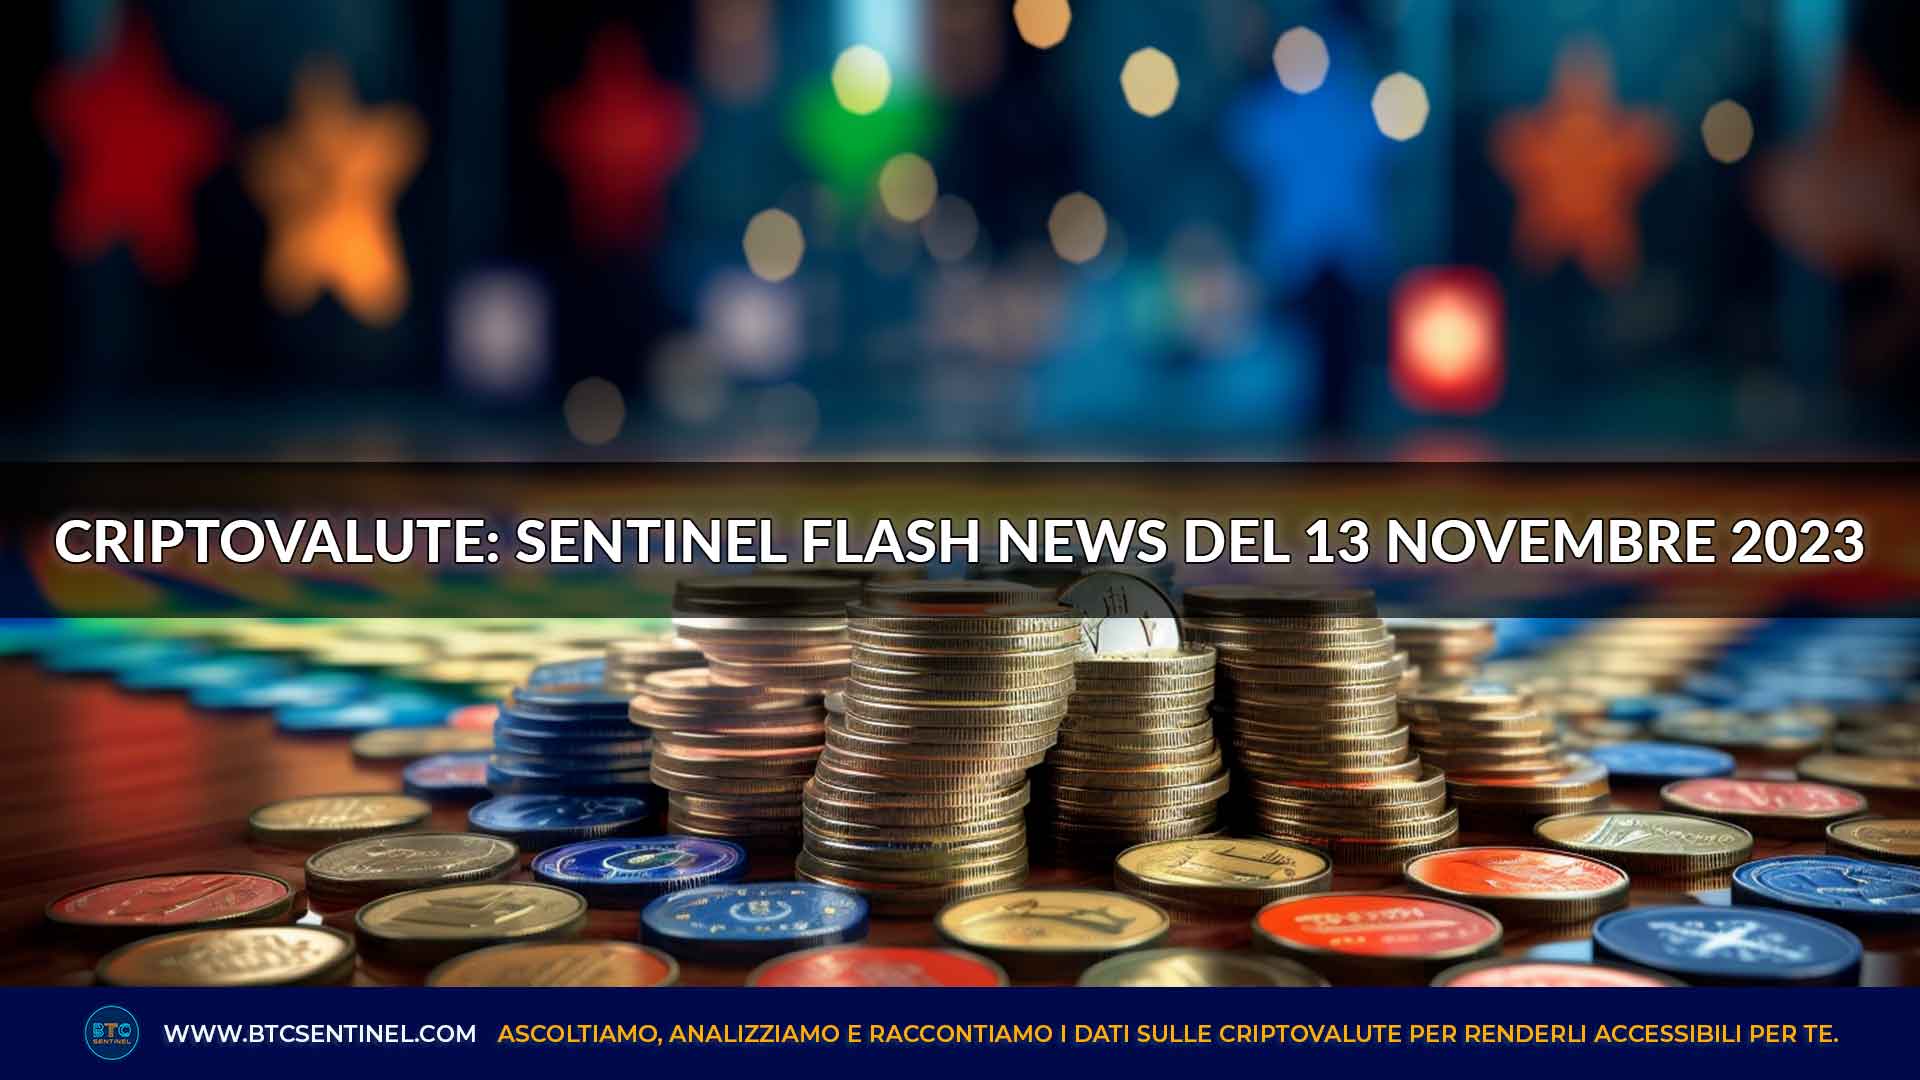 Criptovalute: Sentinel Flash News del 13 novembre 2023